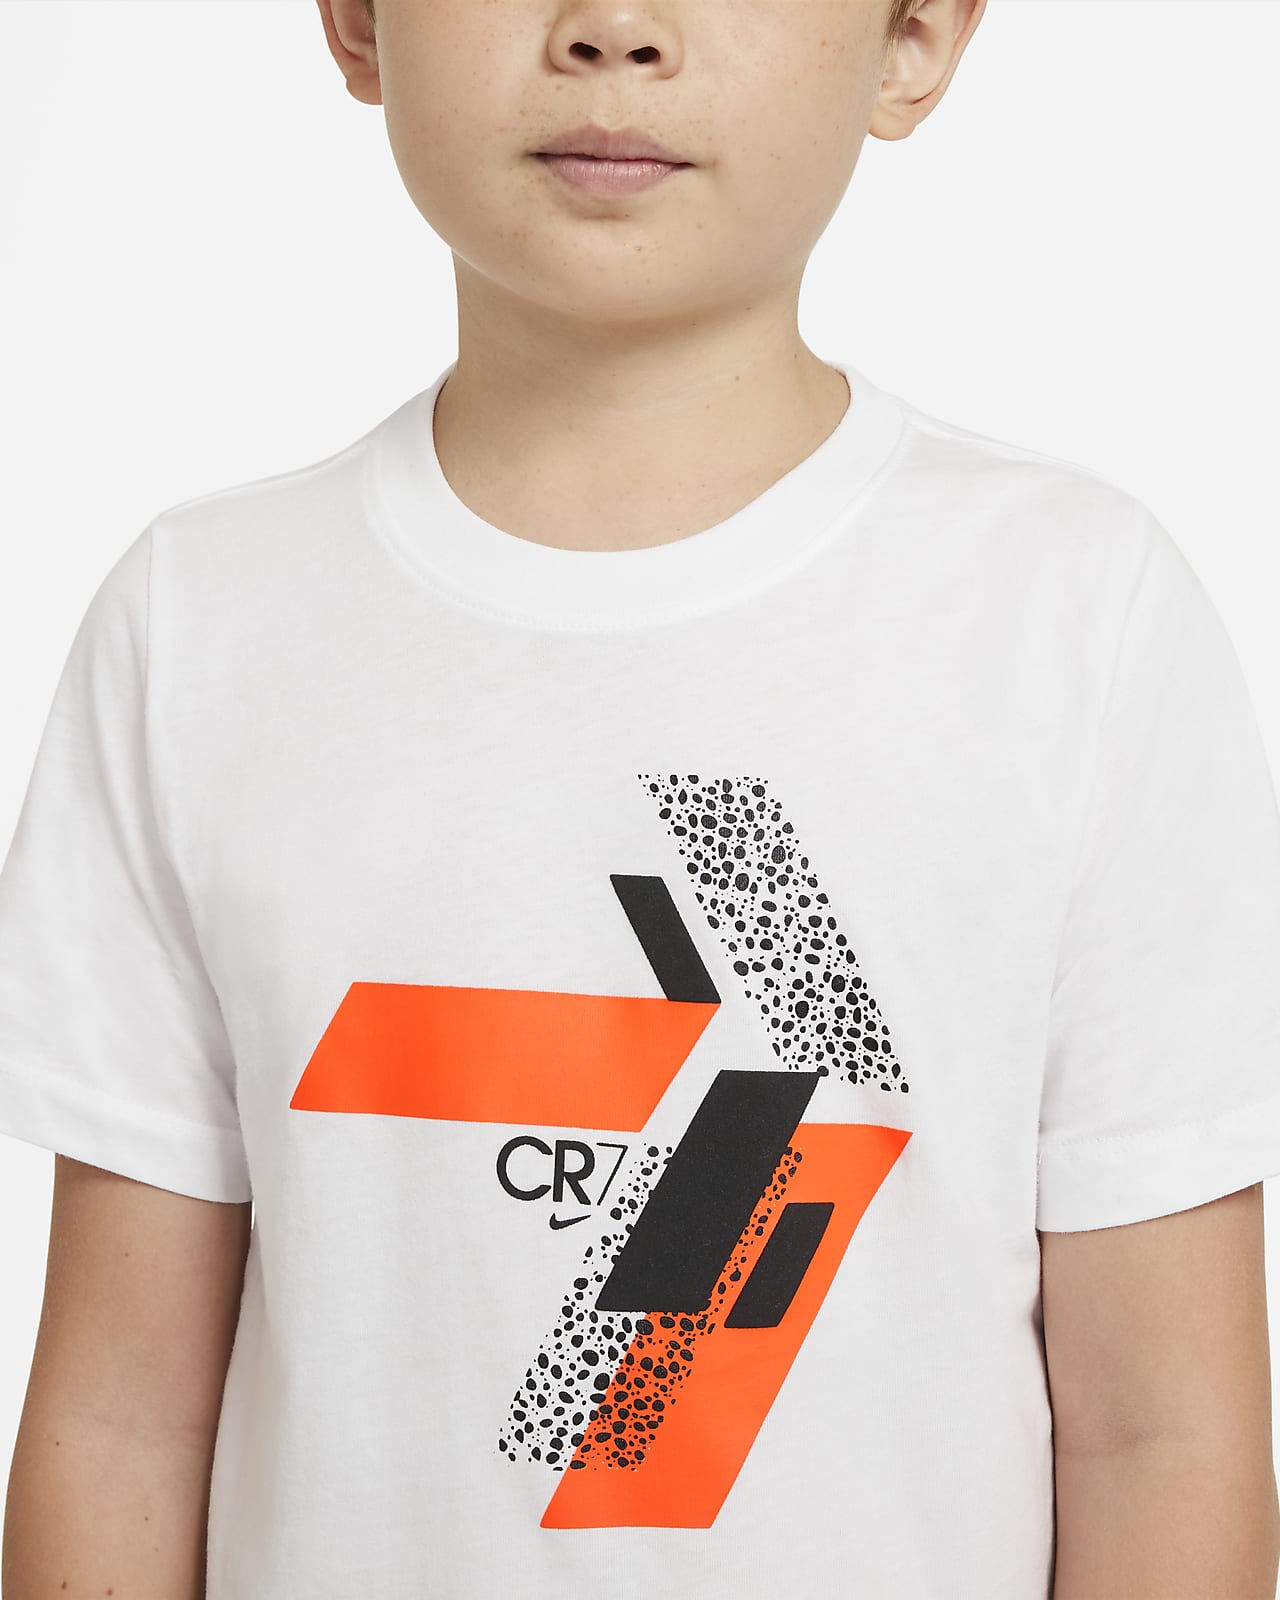 cr7 t shirt